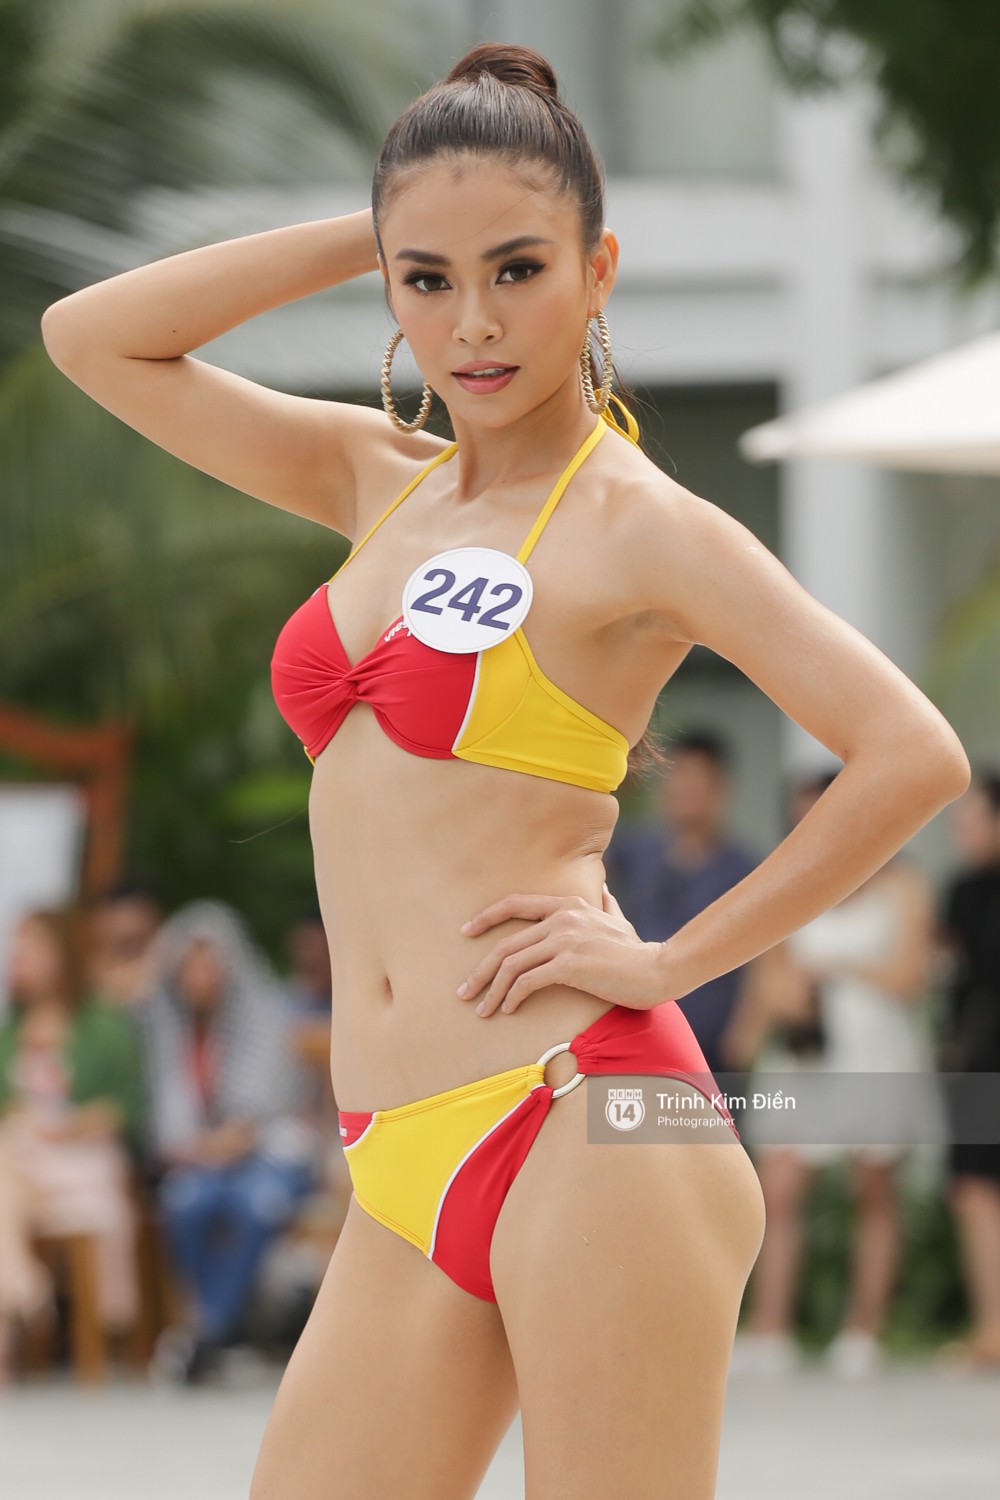 Dàn người đẹp Hoa hậu Hoàn vũ lộ đùi to, bụng mỡ khác xa ảnh photoshop trong phần thi trình diễn bikini - Ảnh 6.